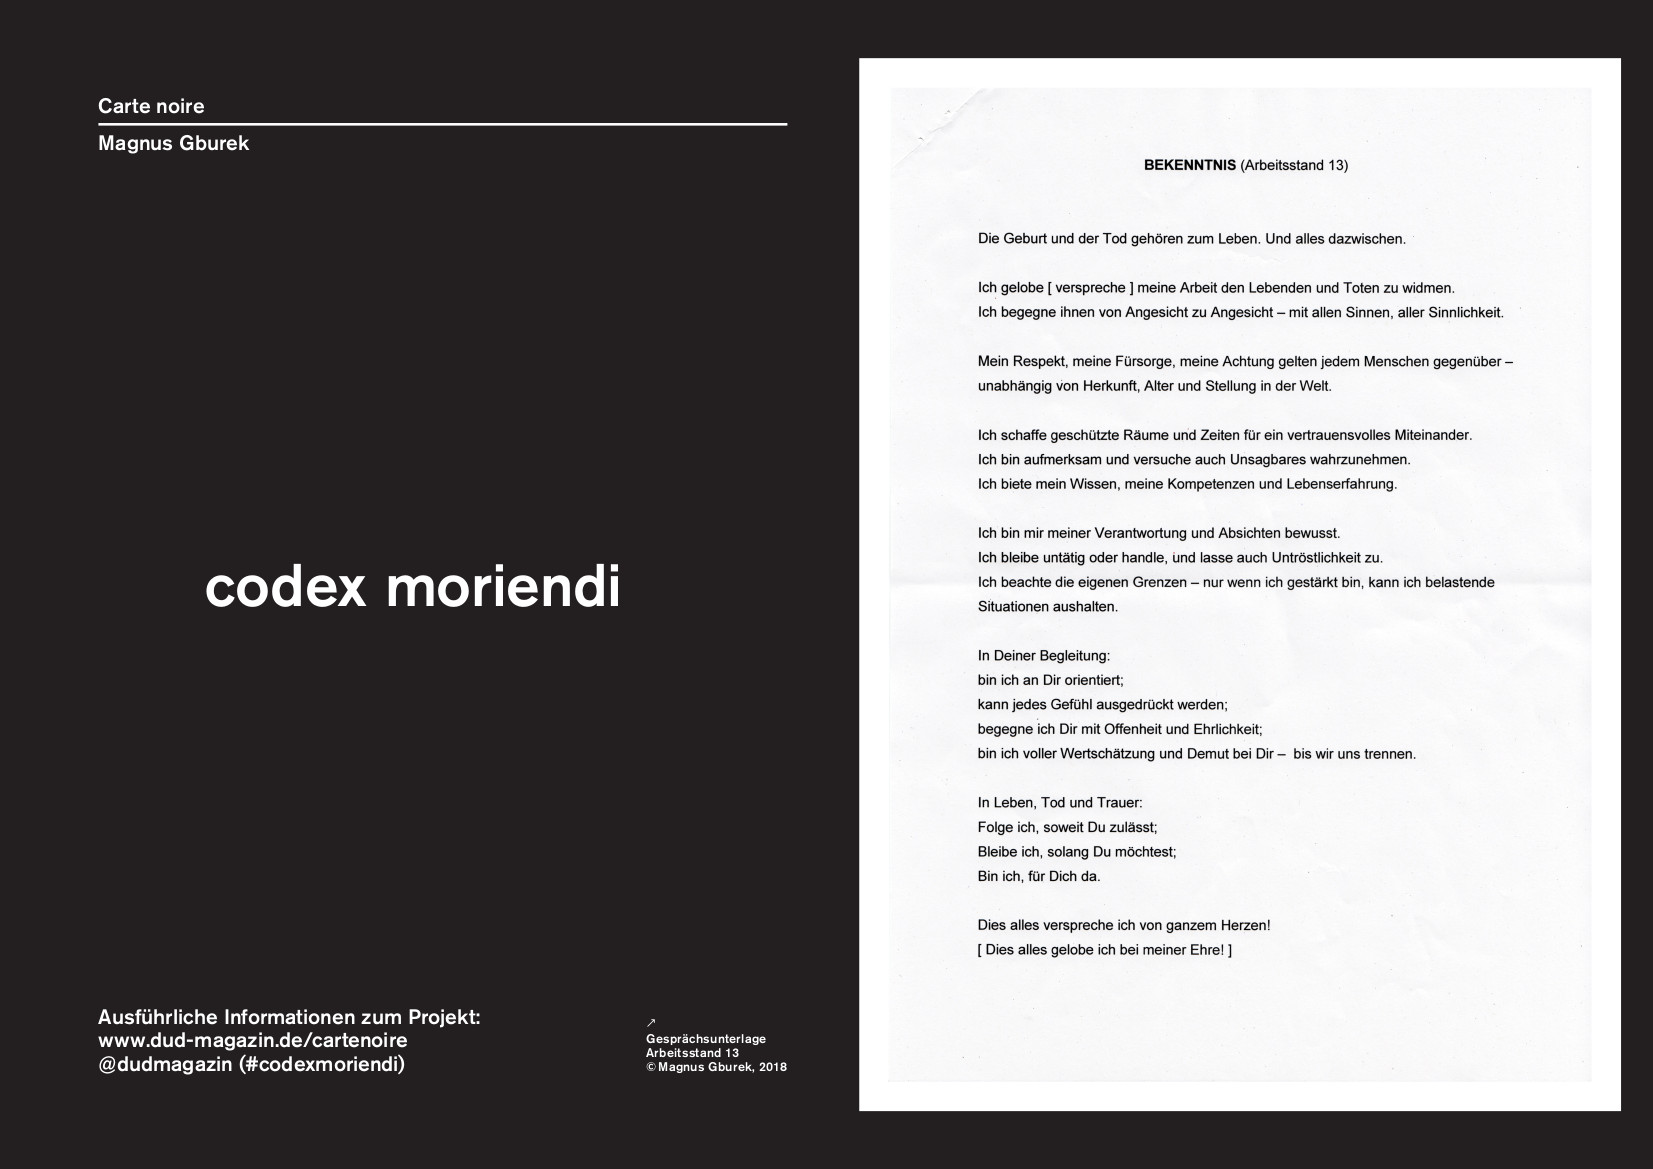 codex moriendi | Magnus Gburek